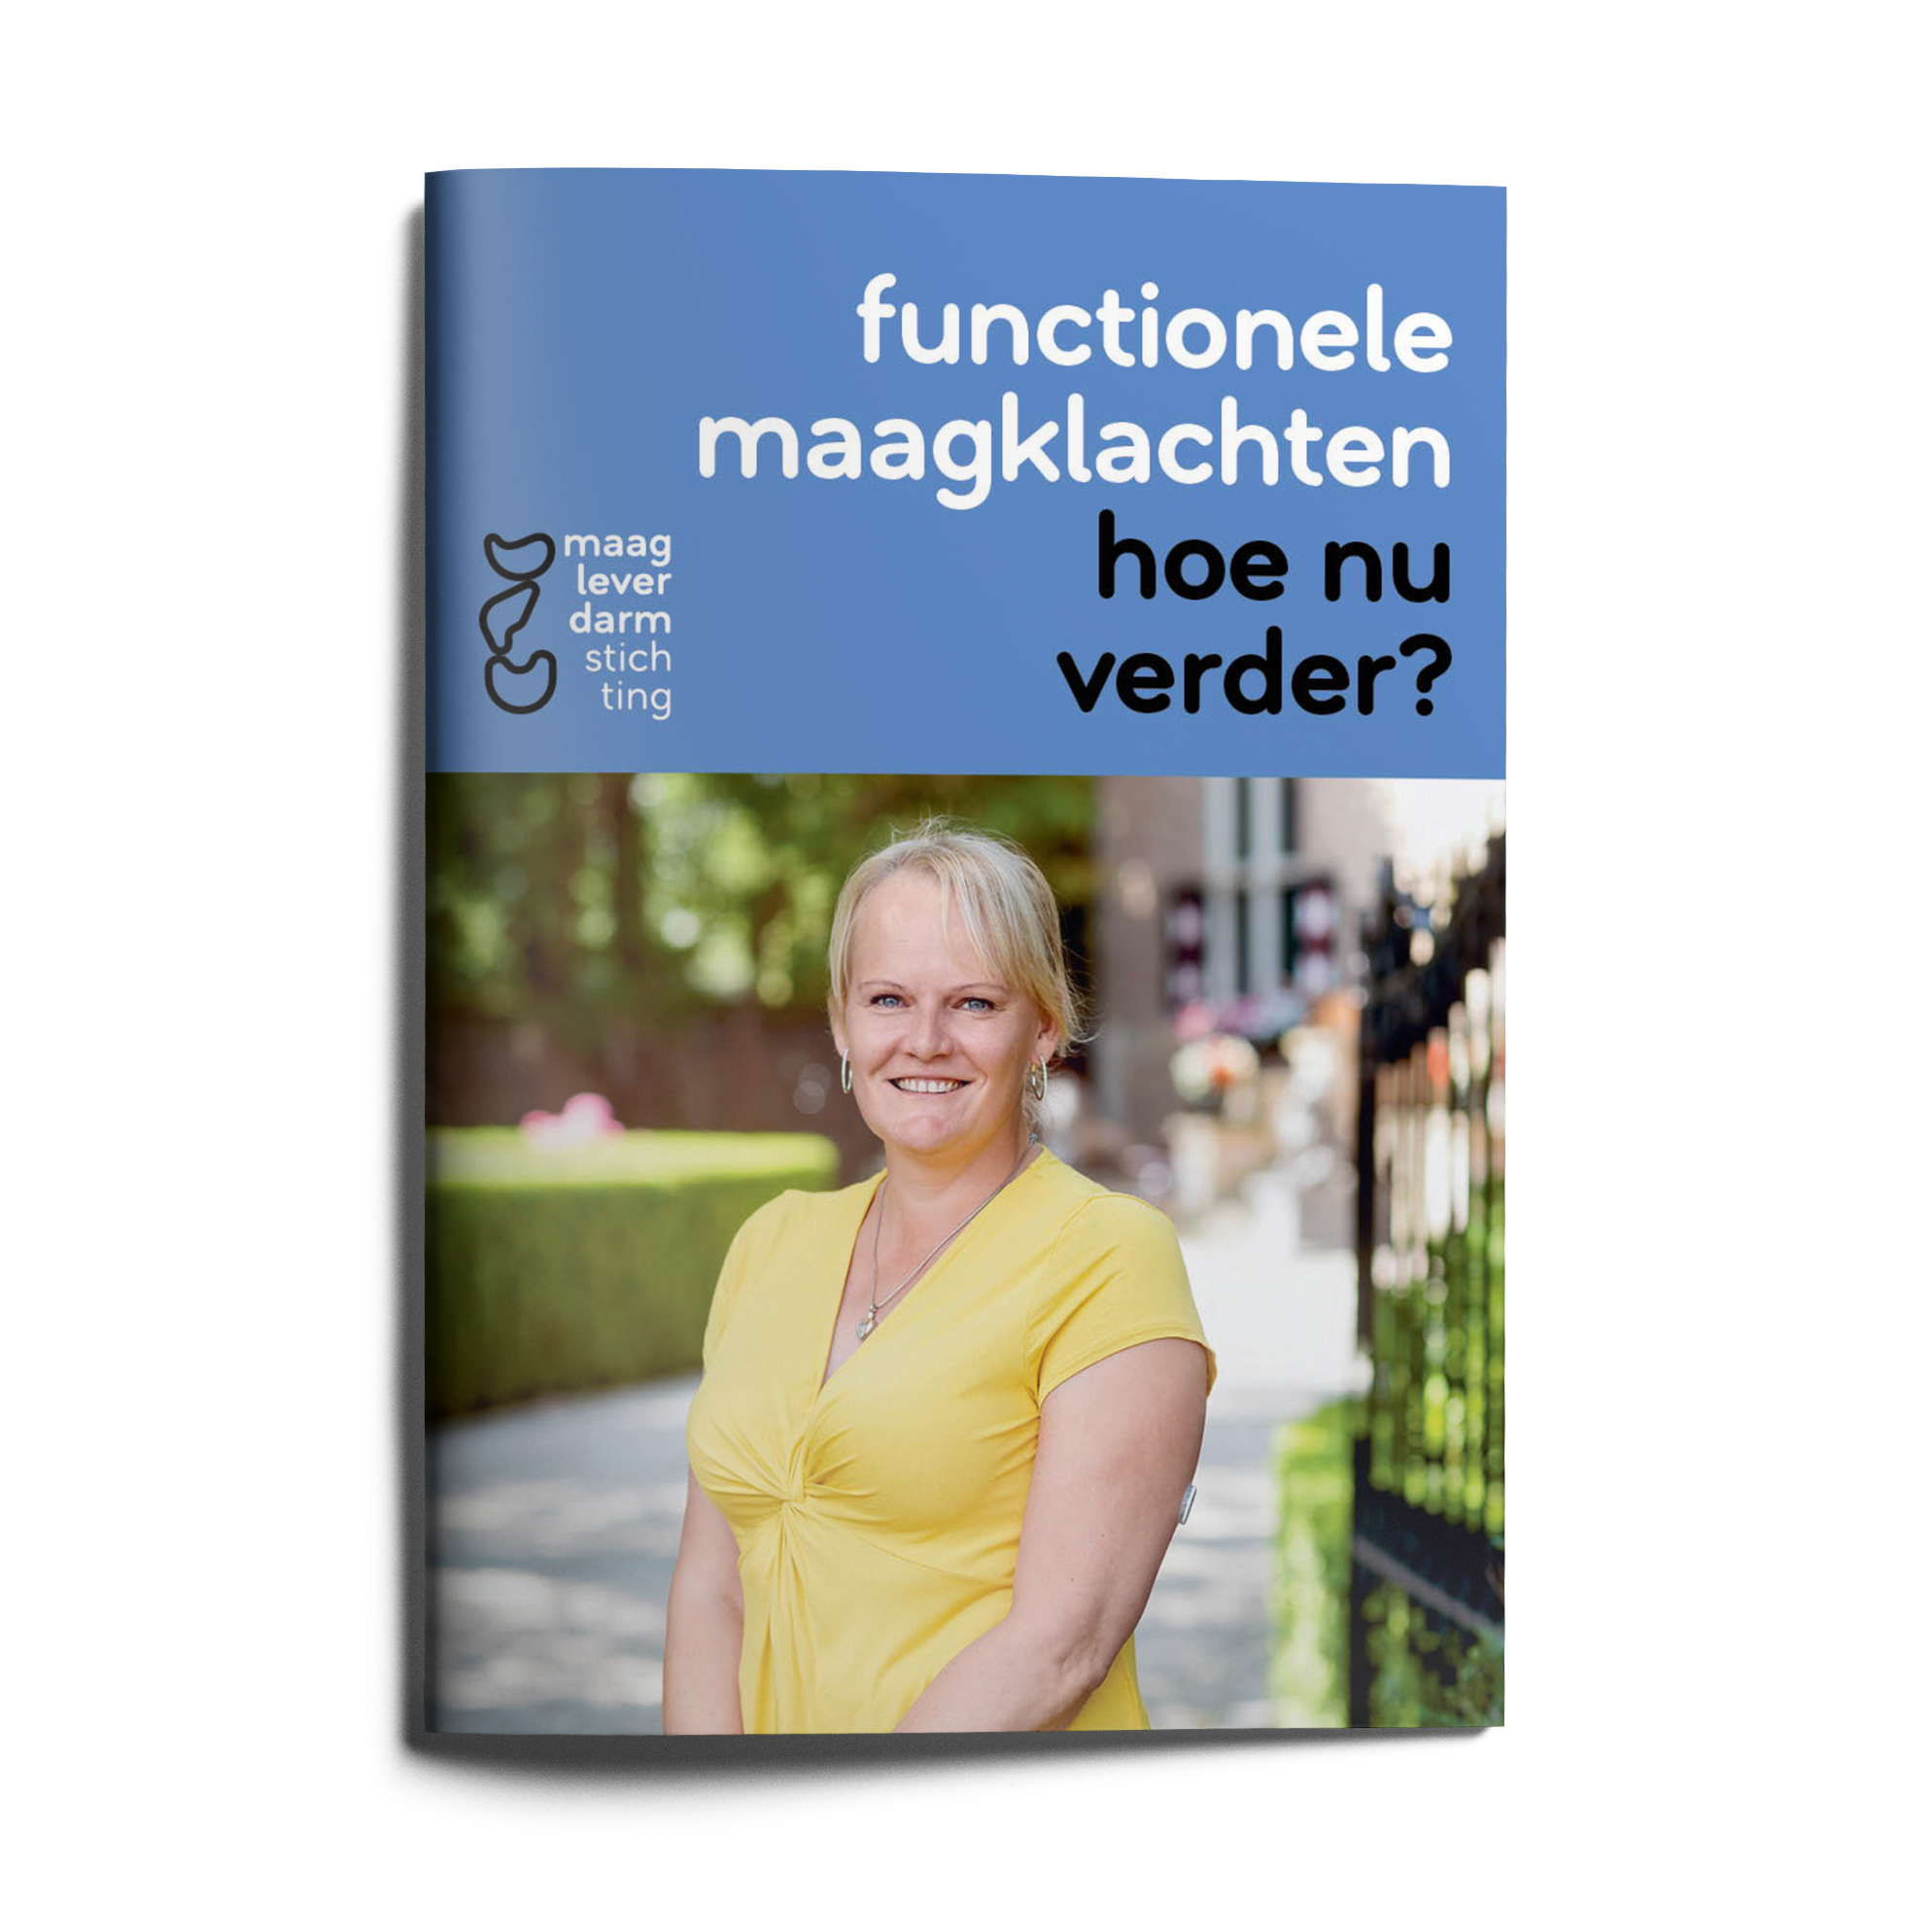 https://www.mlds.nl/content/uploads/brochure-functionele-maagklachten.png